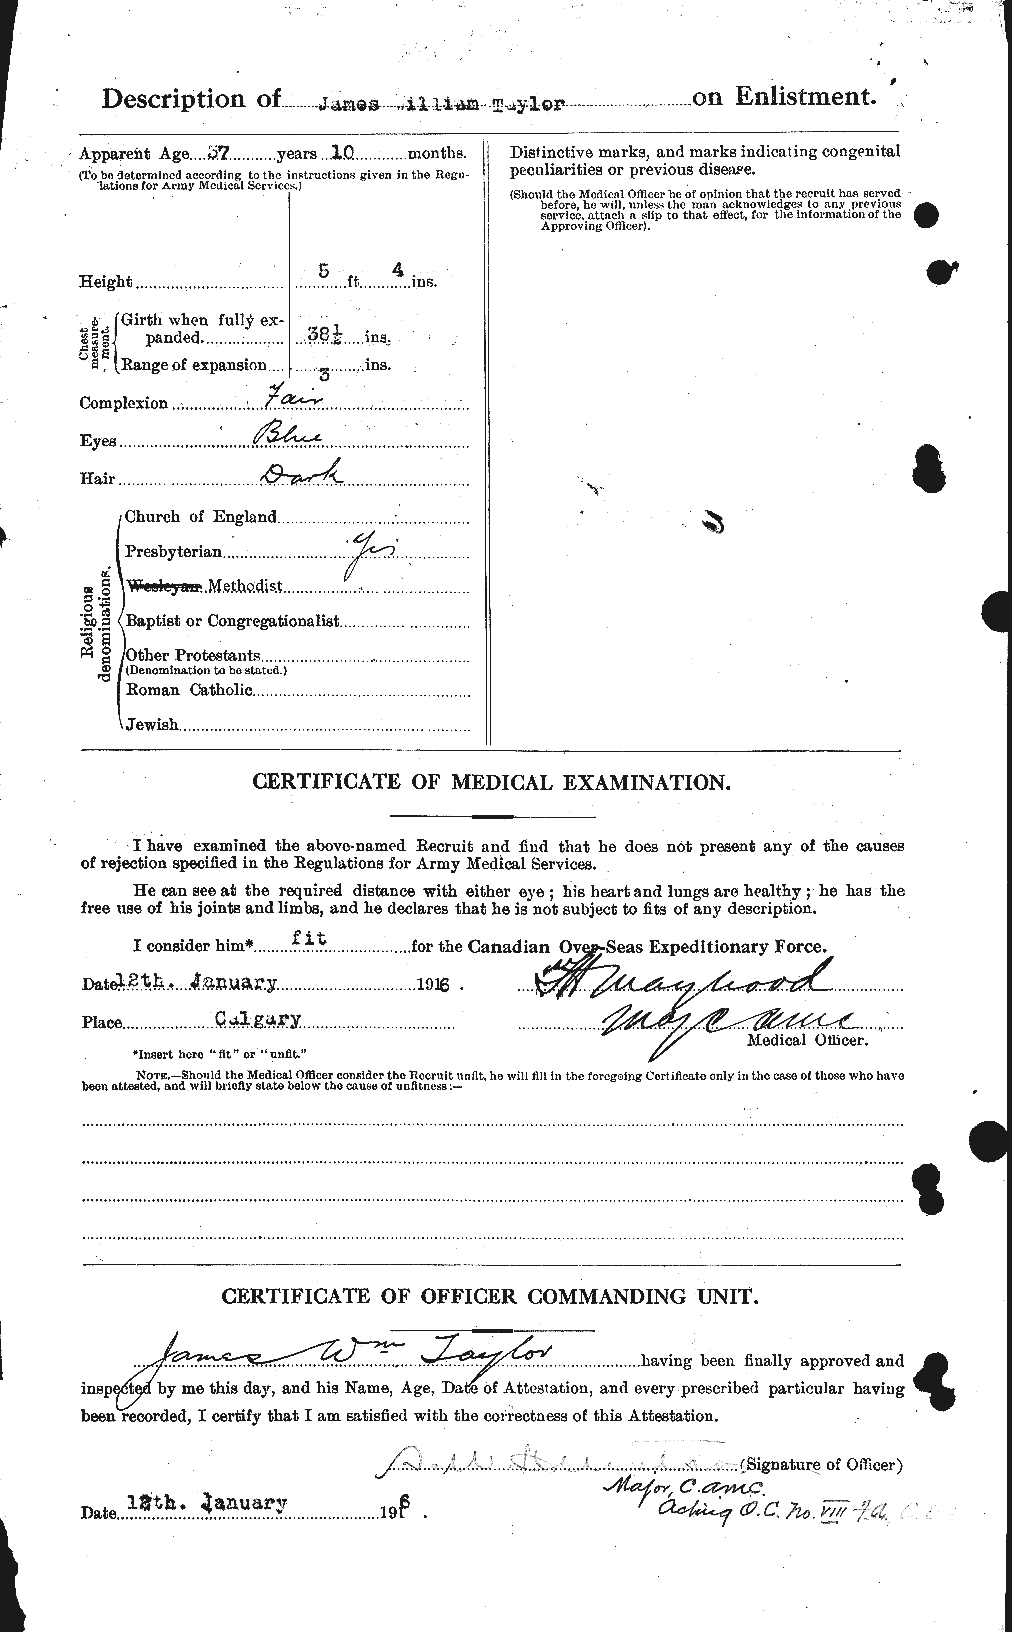 Dossiers du Personnel de la Première Guerre mondiale - CEC 626964b